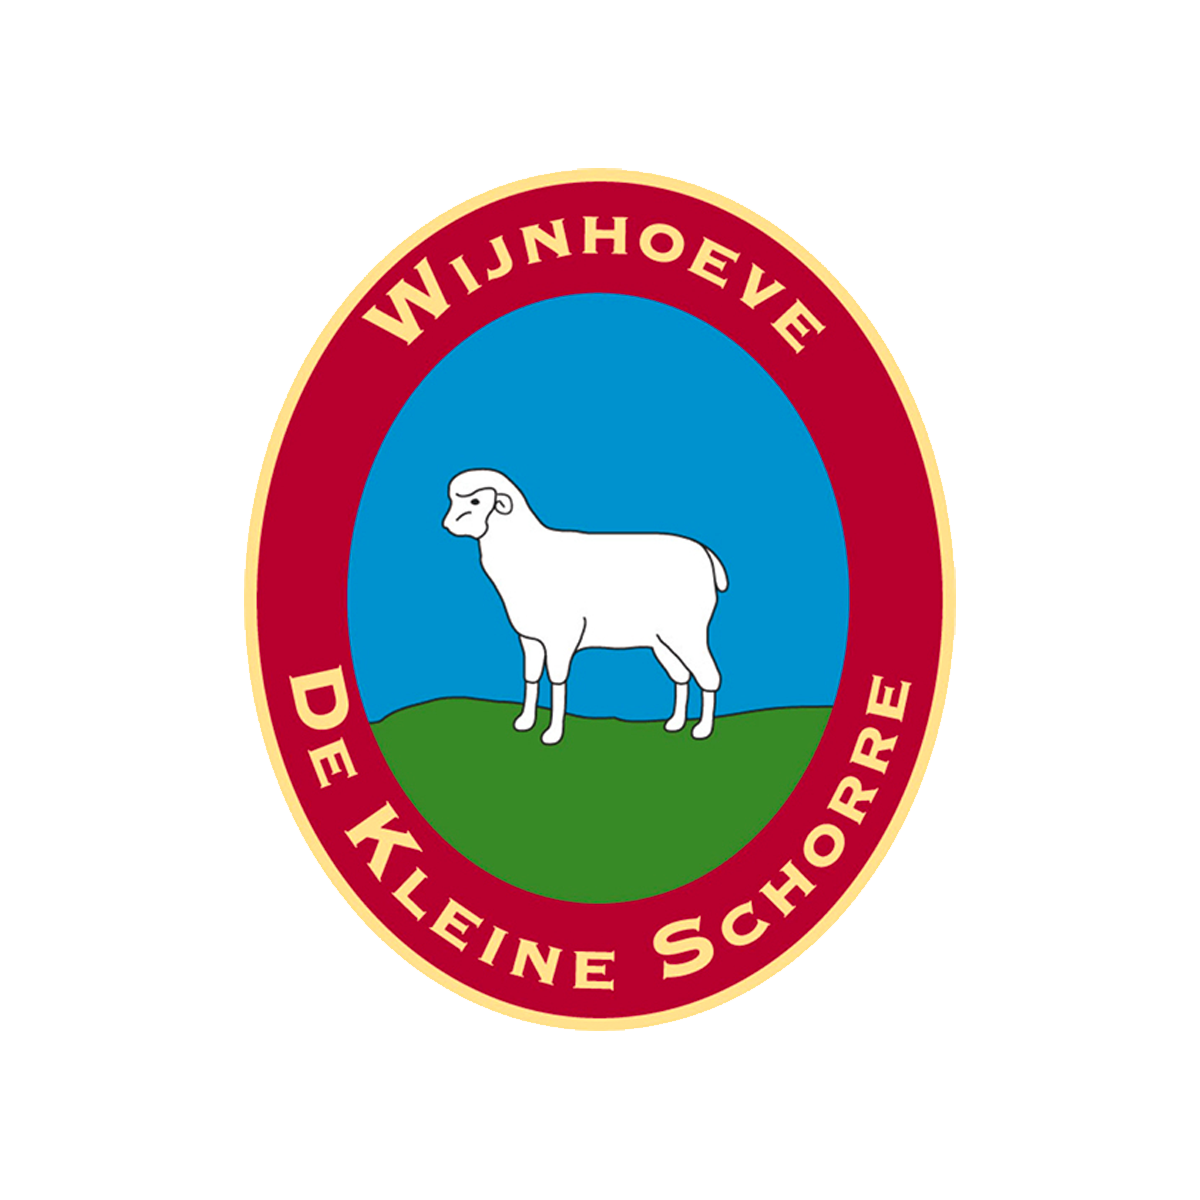 Logo De Kleine Schorre